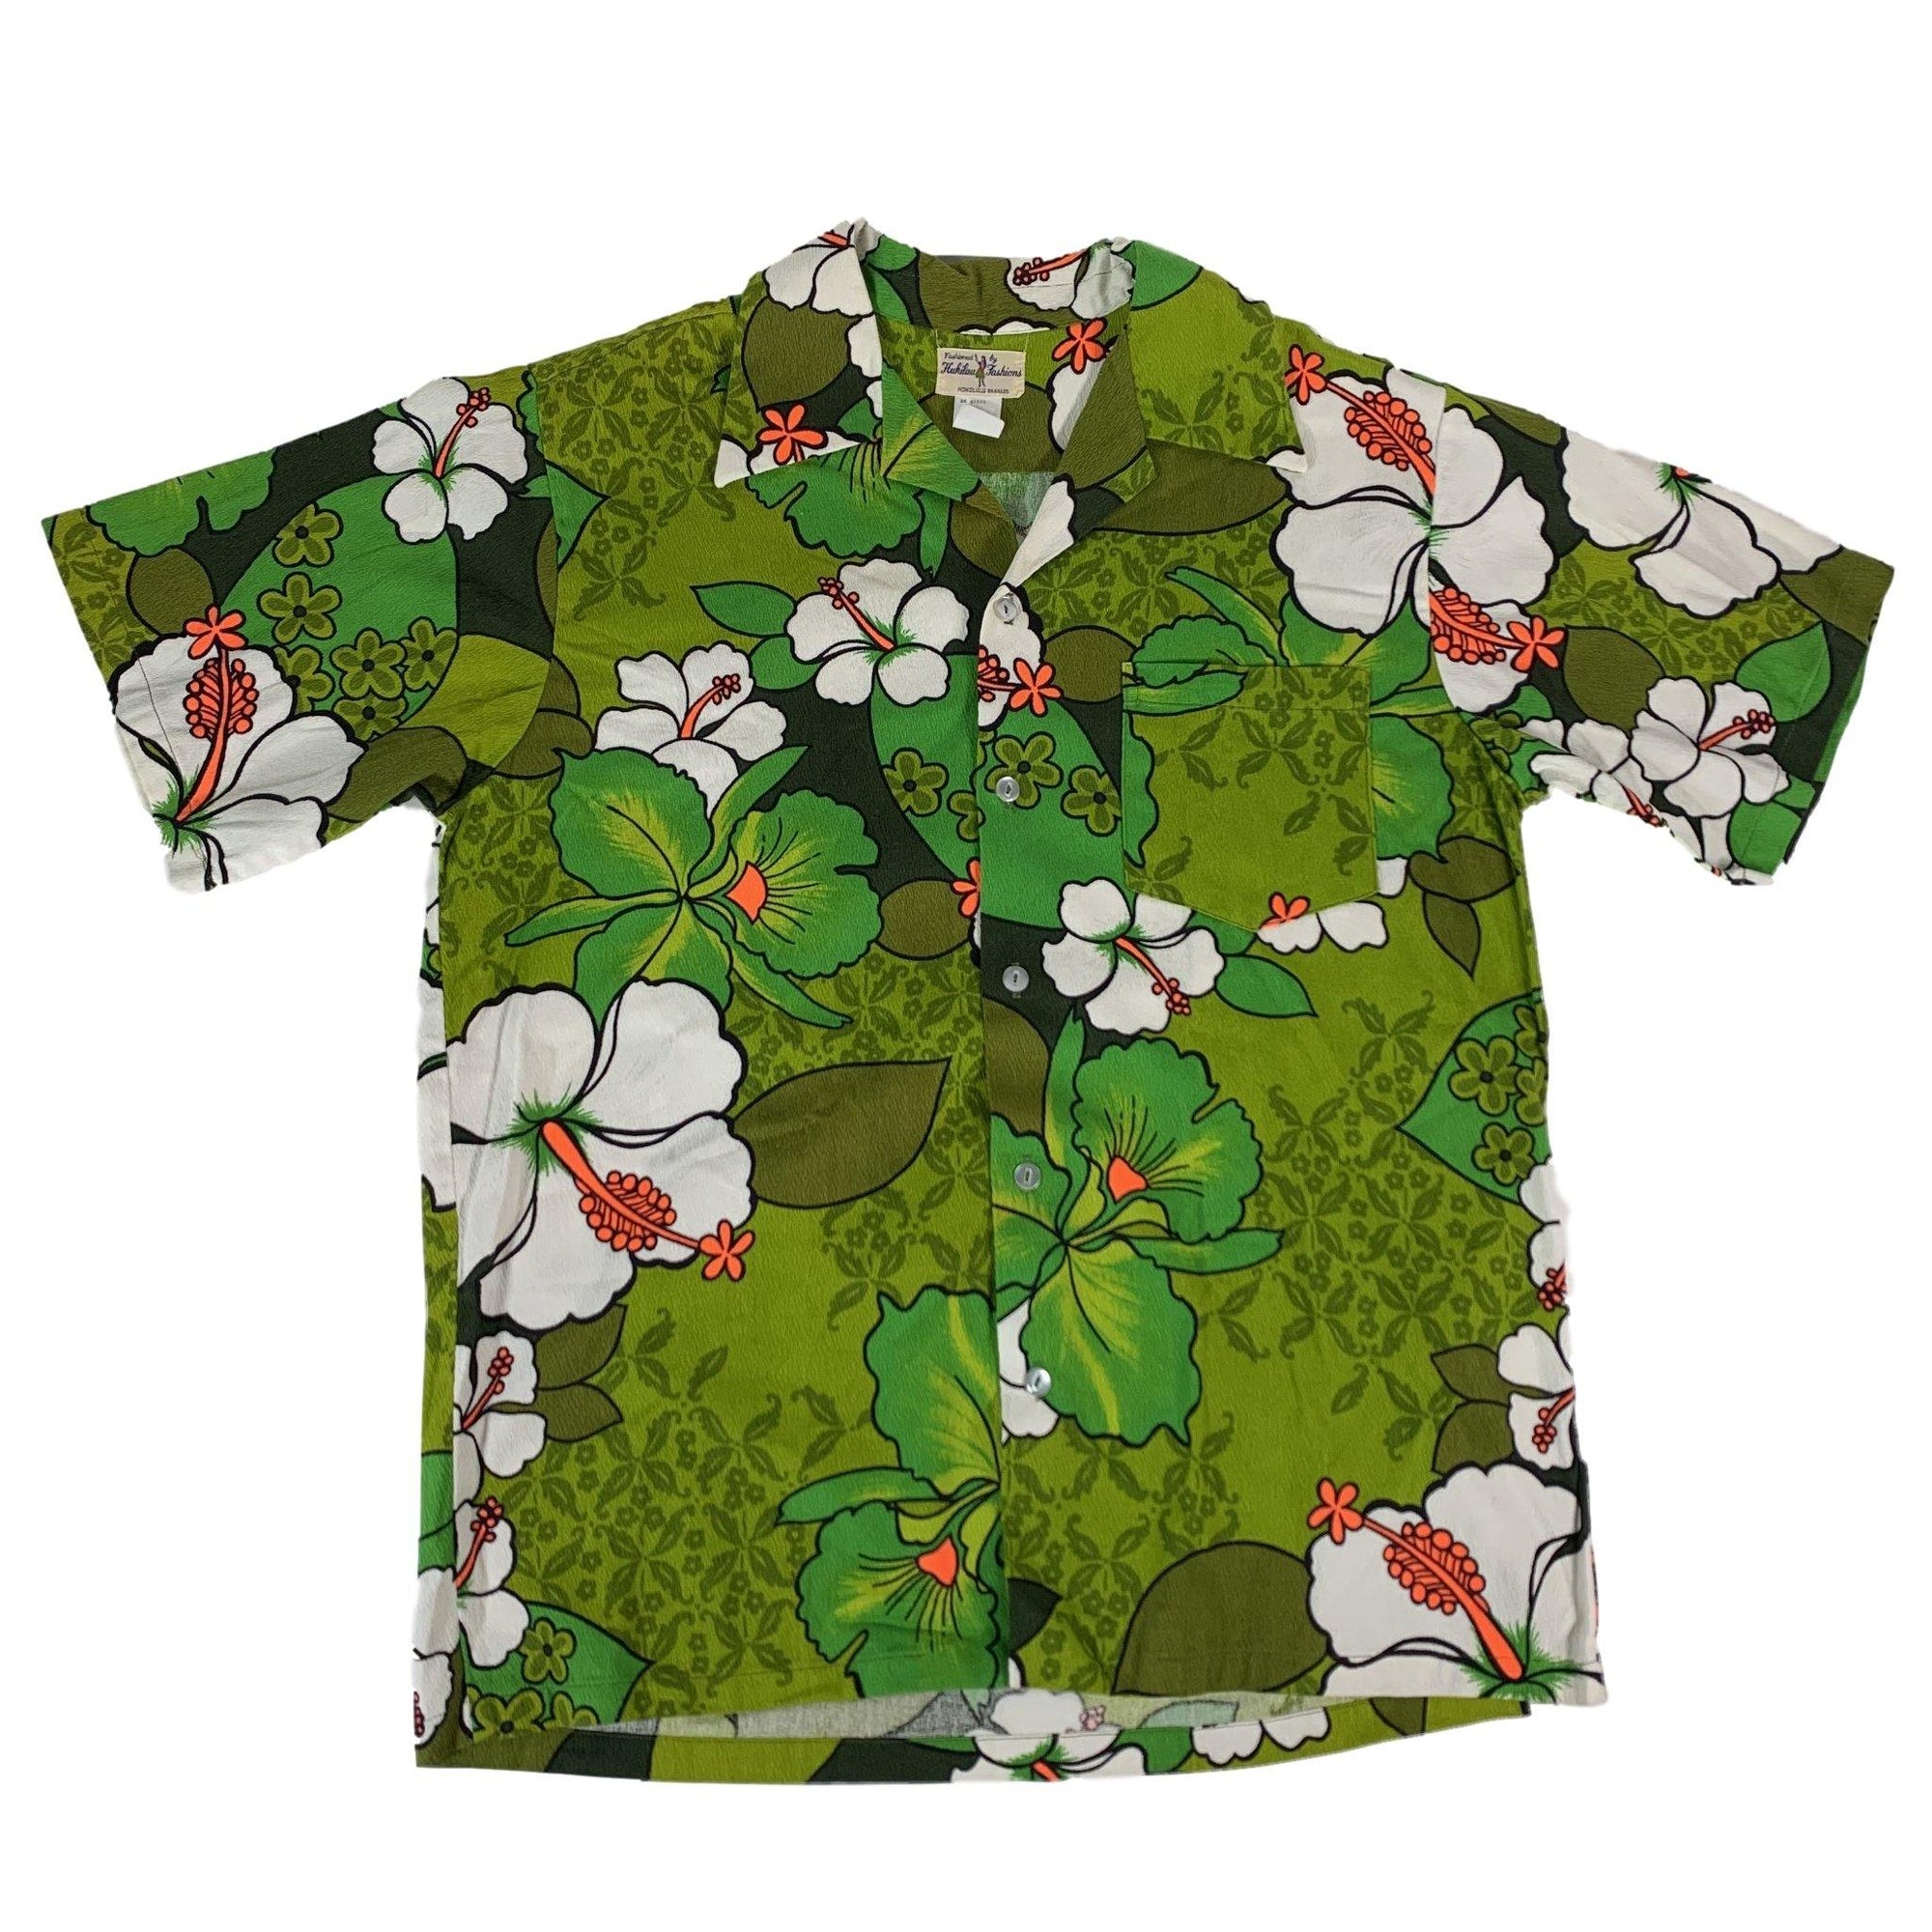 Vintage Hukilau Fashions "Hawaiian" Shirt - jointcustodydc